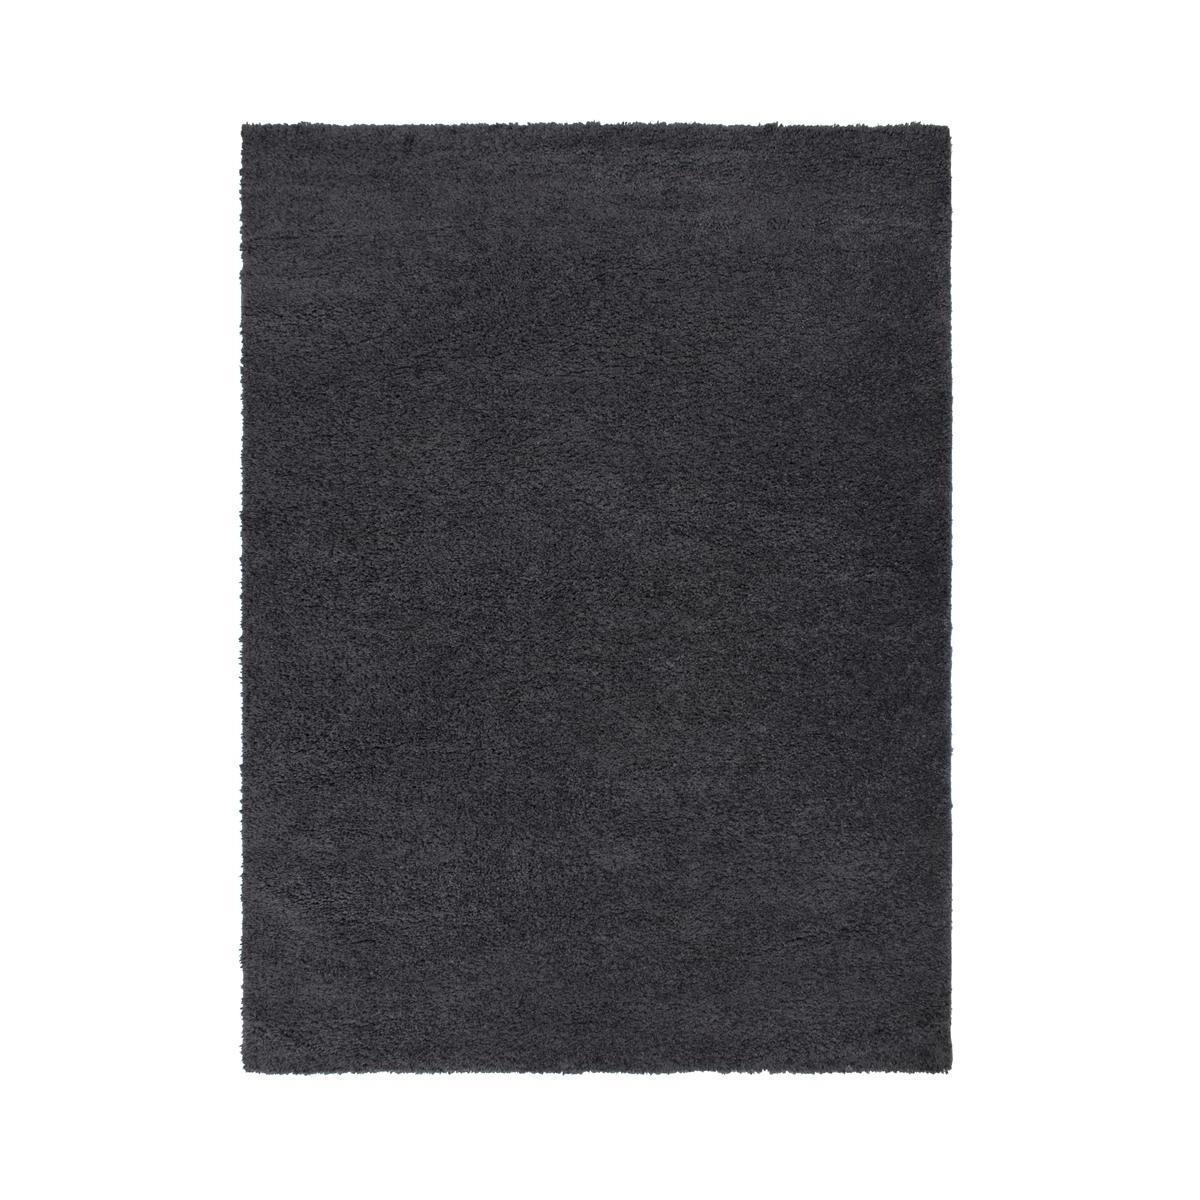 Tapis berbère - 150 x 200 cm - Gris - K.KOON